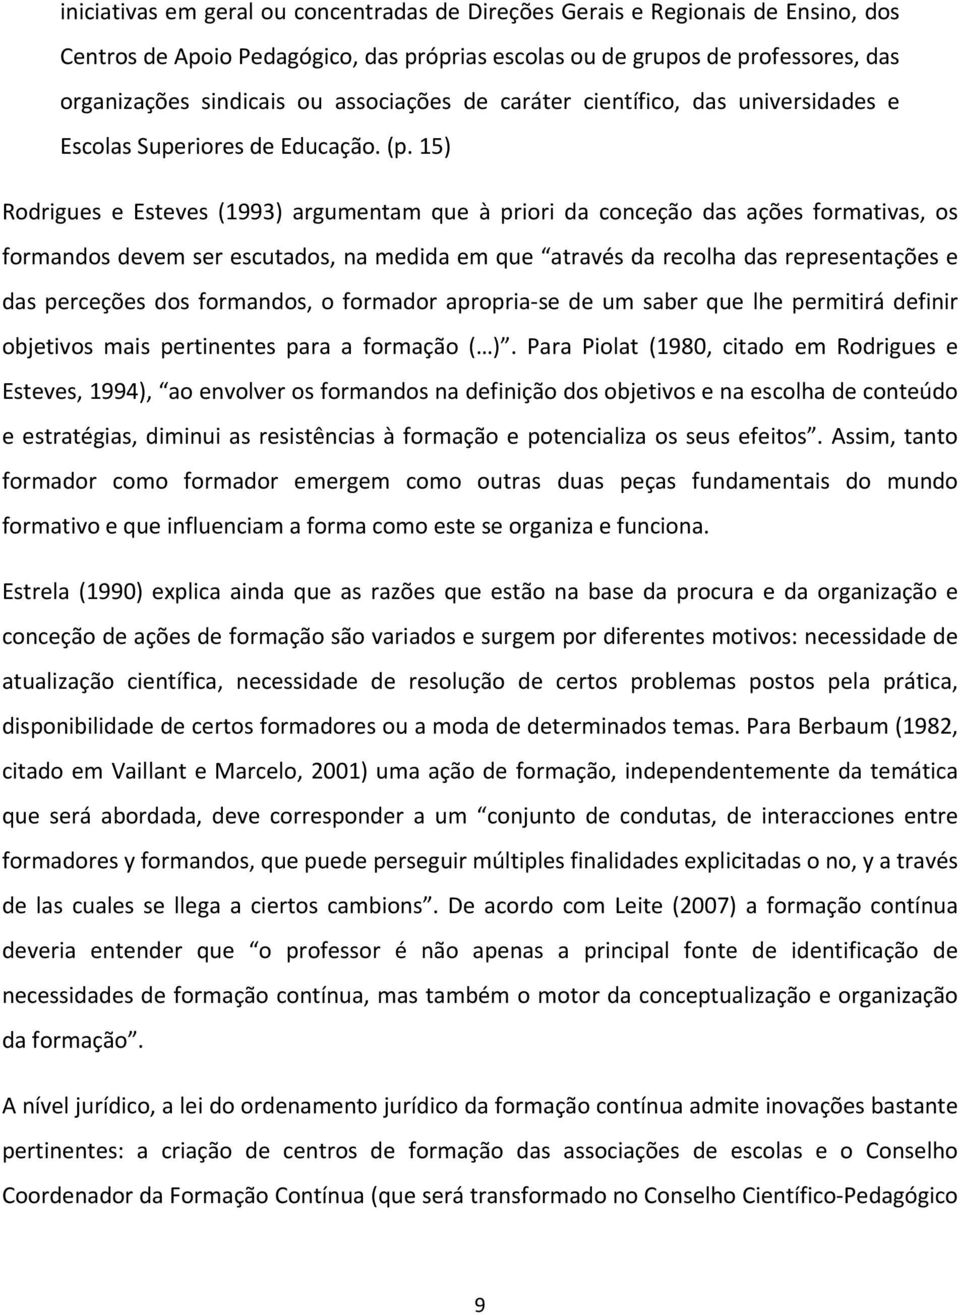 15) Rodrigues e Esteves (1993) argumentam que à priori da conceção das ações formativas, os formandos devem ser escutados, na medida em que através da recolha das representações e das perceções dos